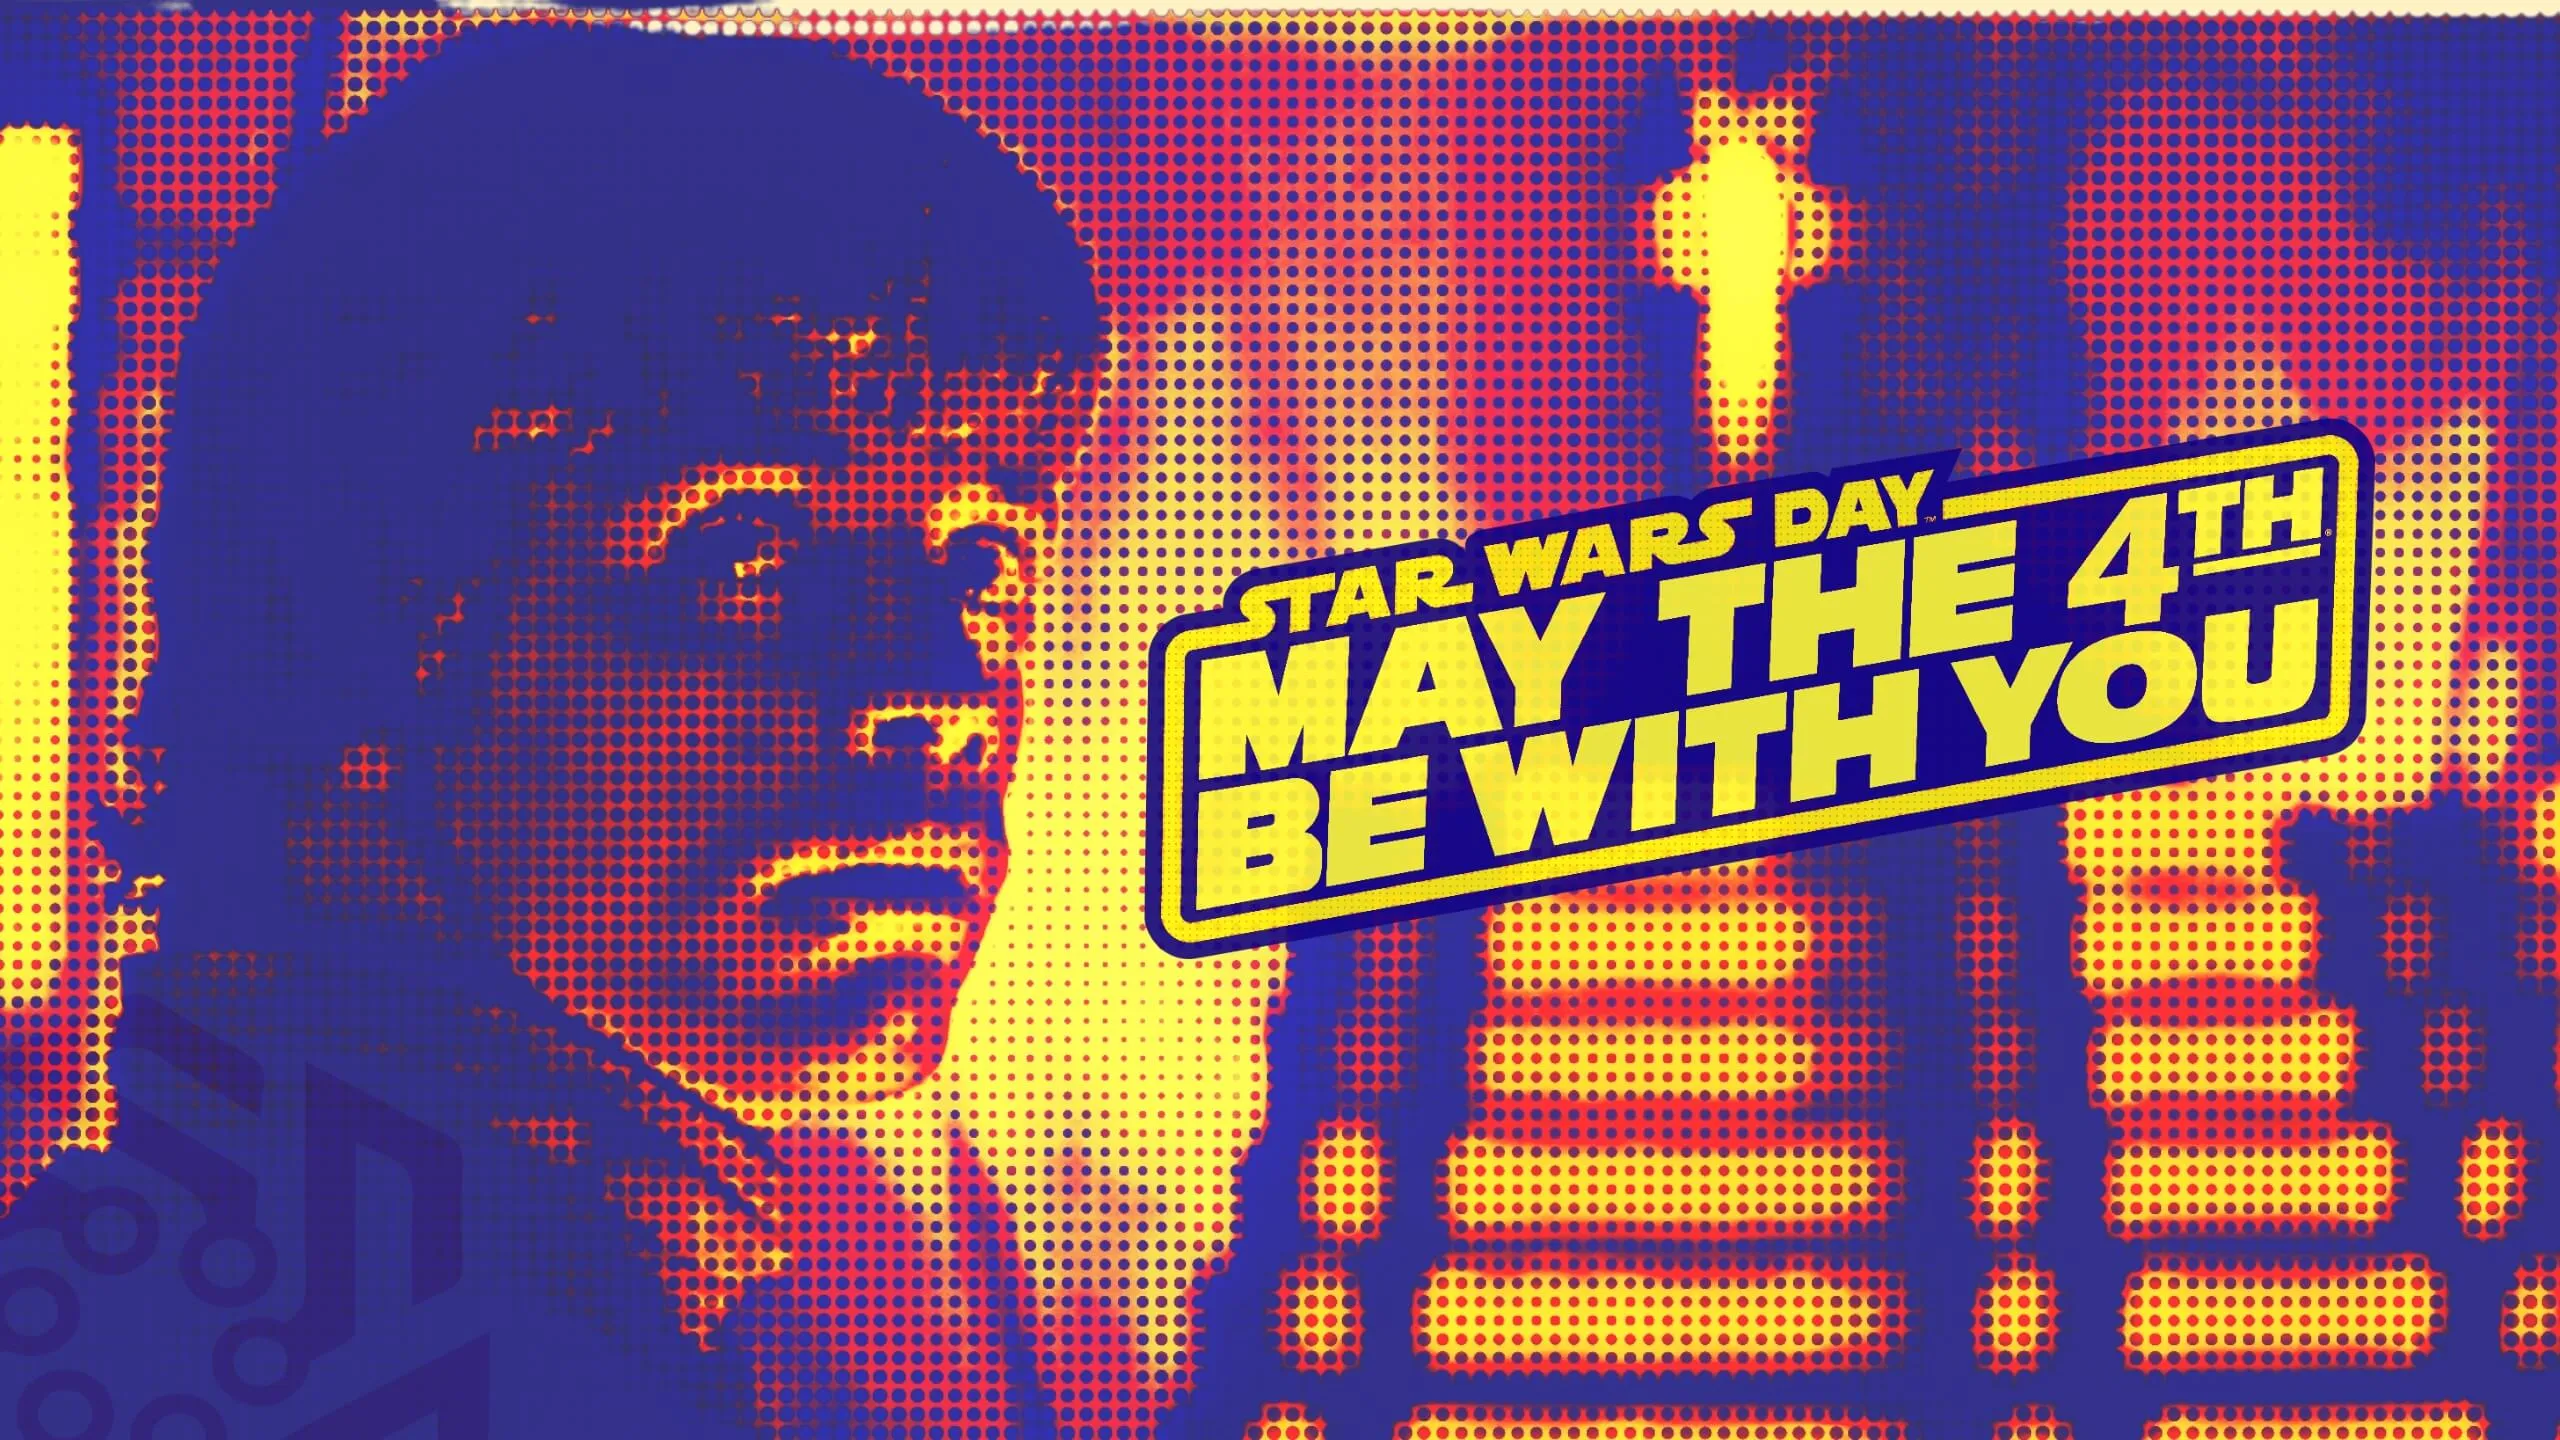 Pop art style Luke Skywalker from Star Wars screenshot 